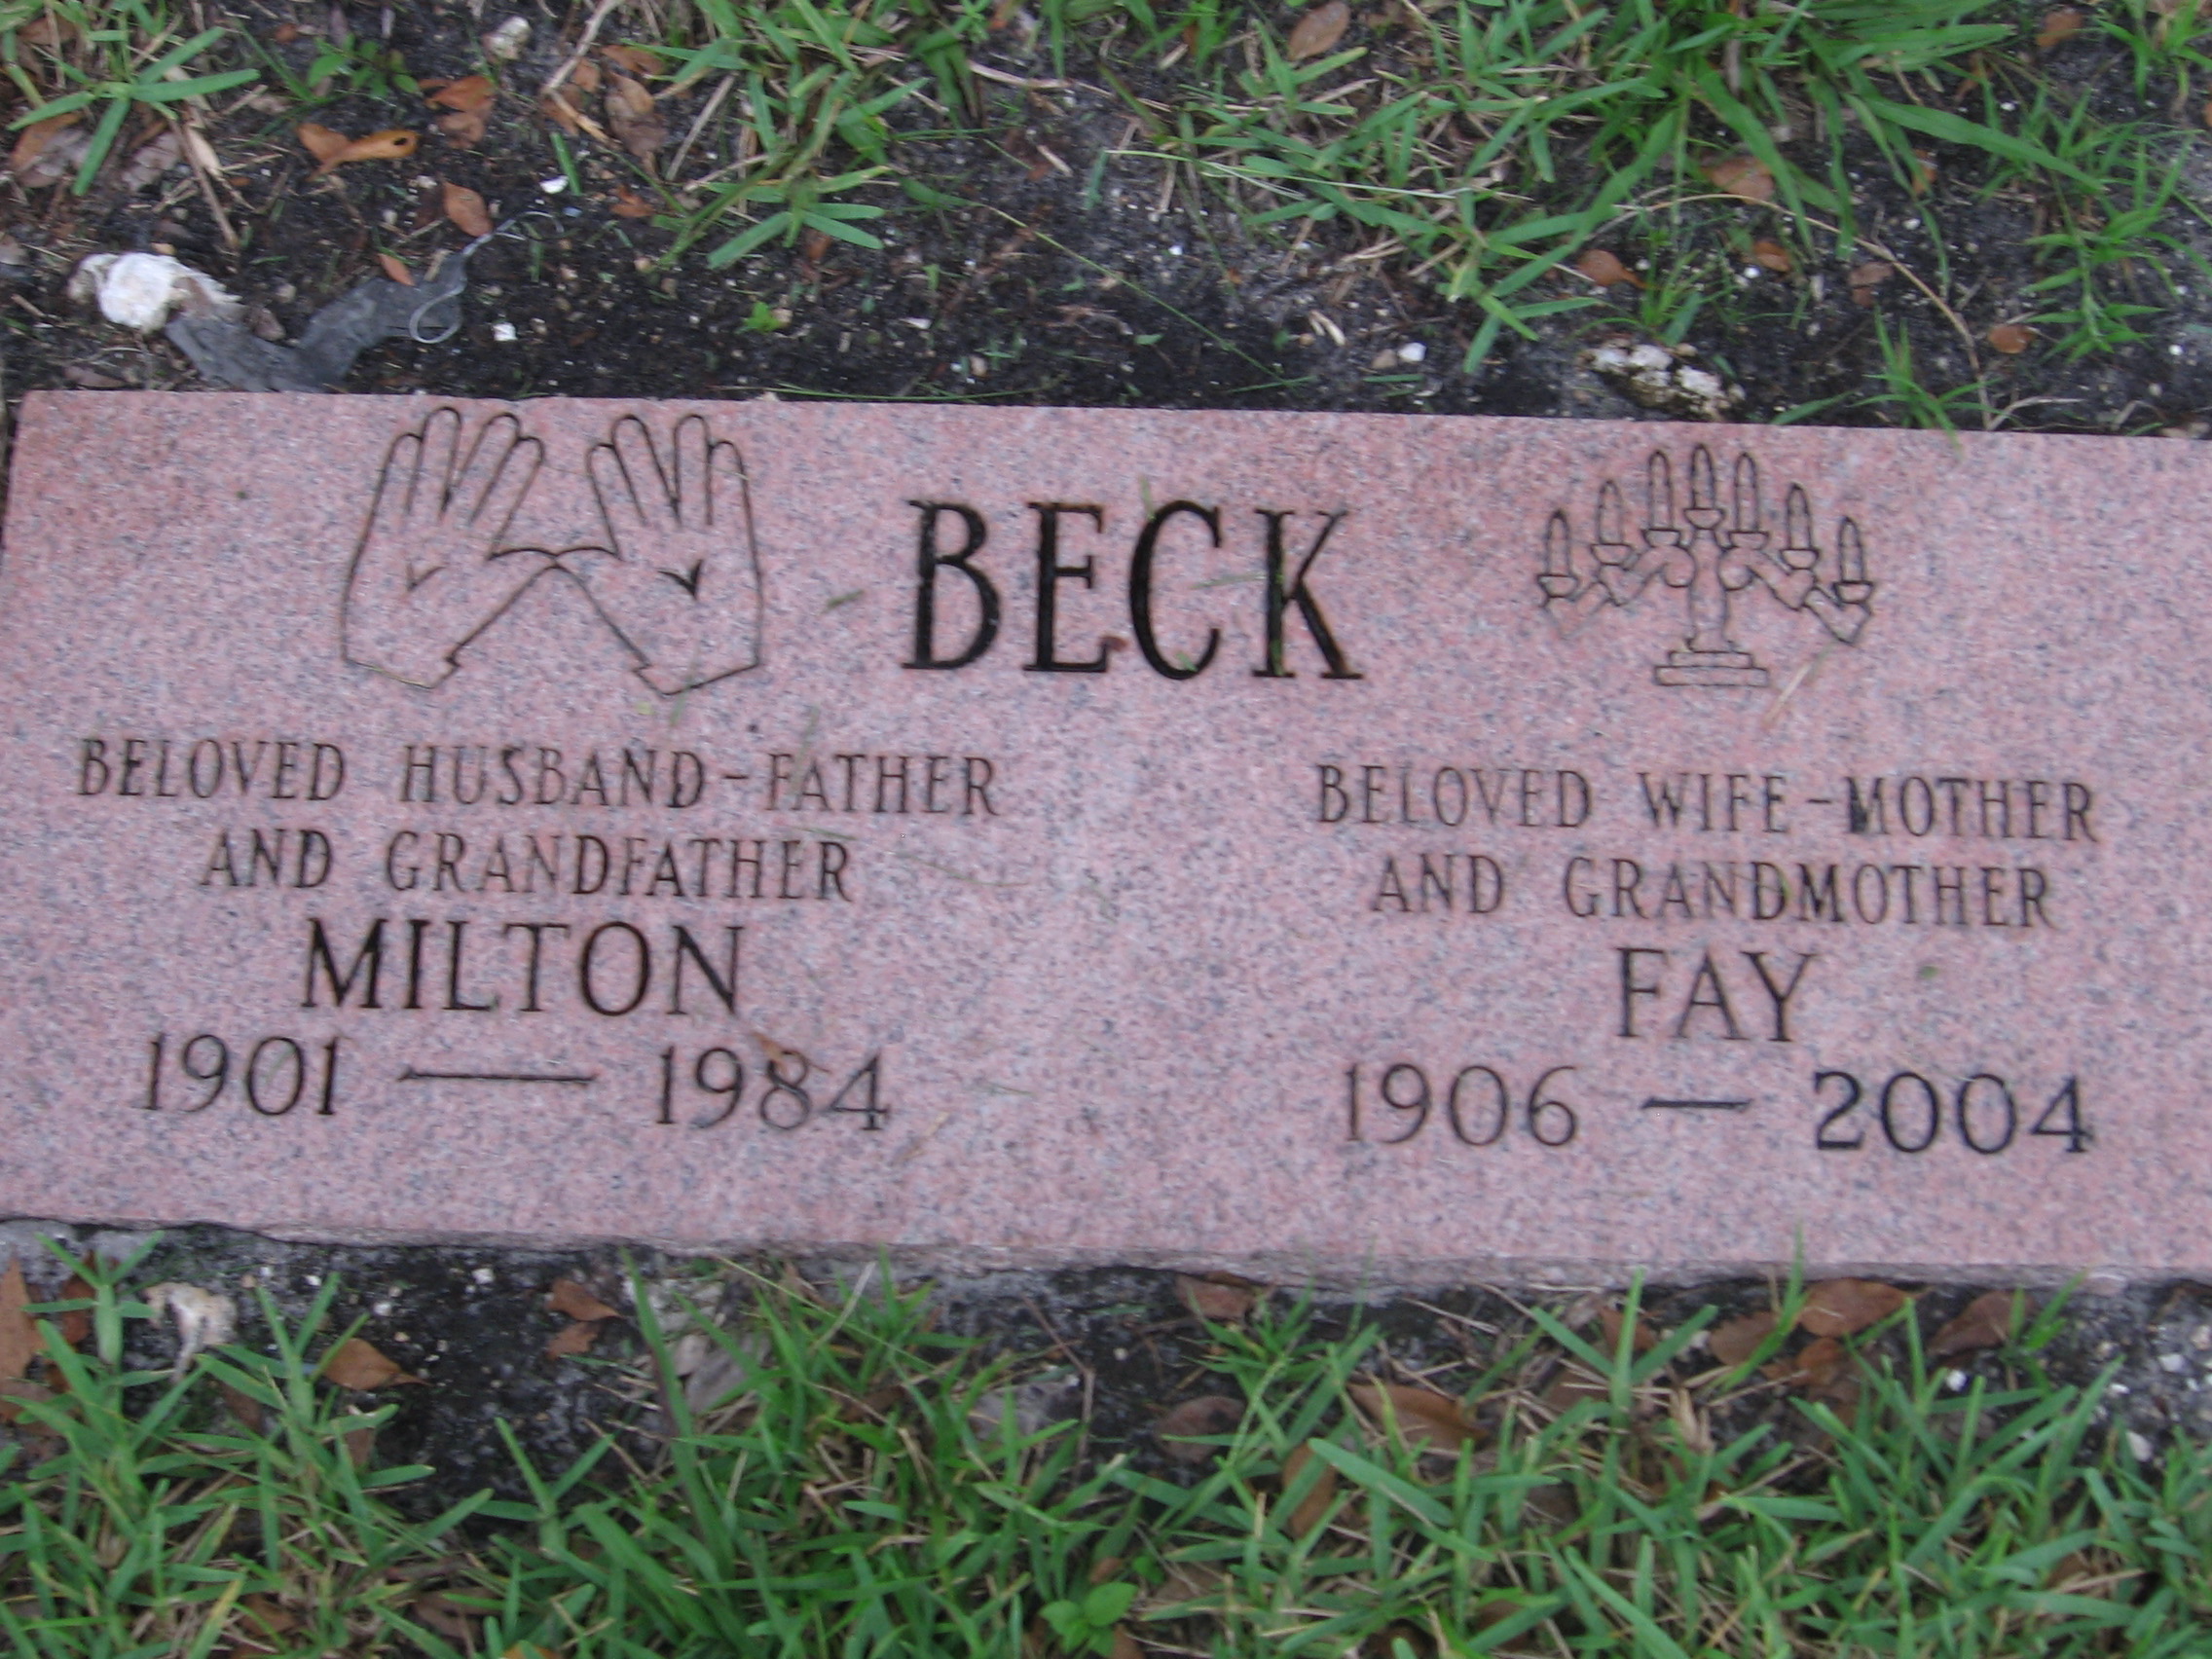 Milton Beck